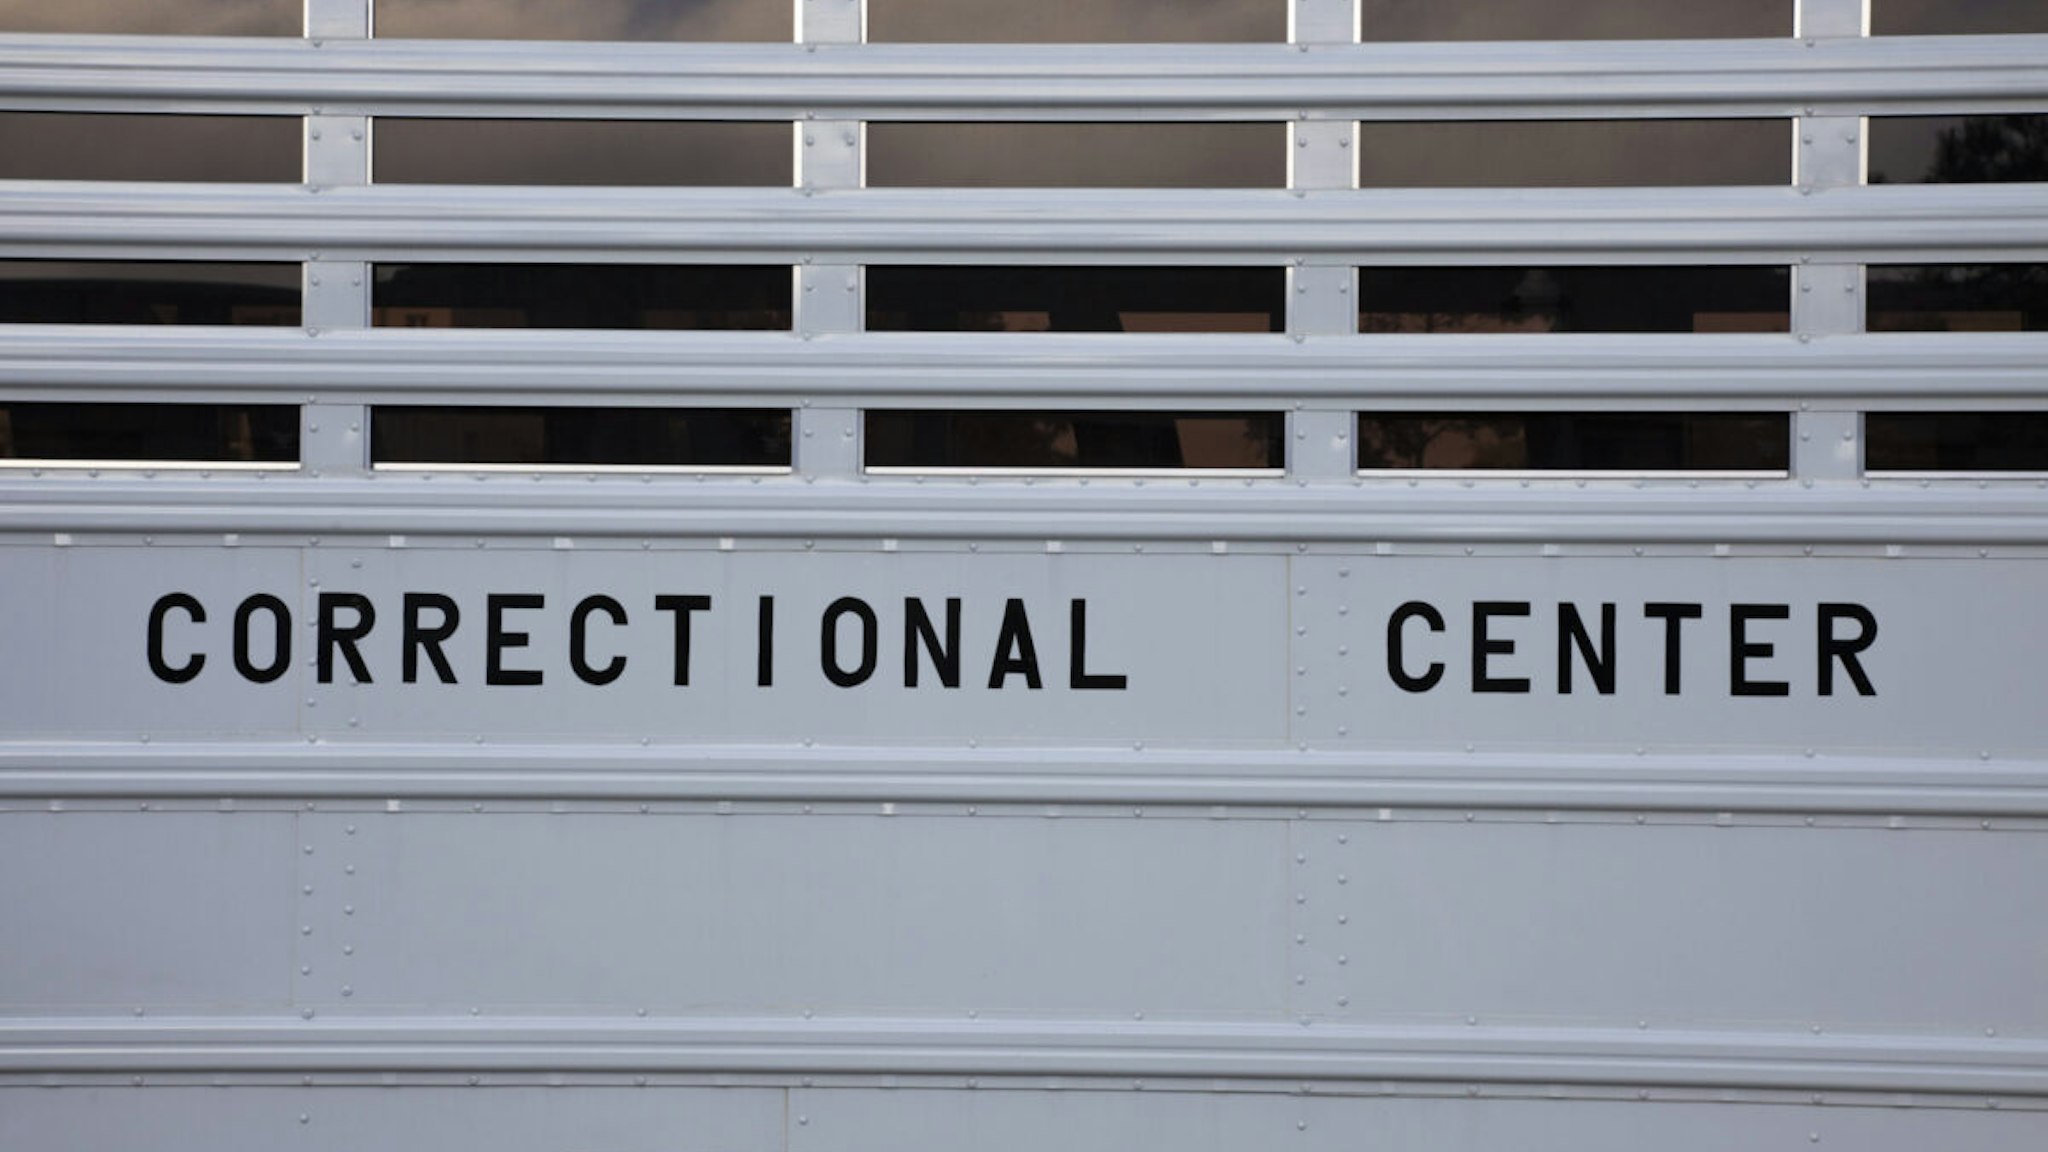 Correctional Center - - stock photo